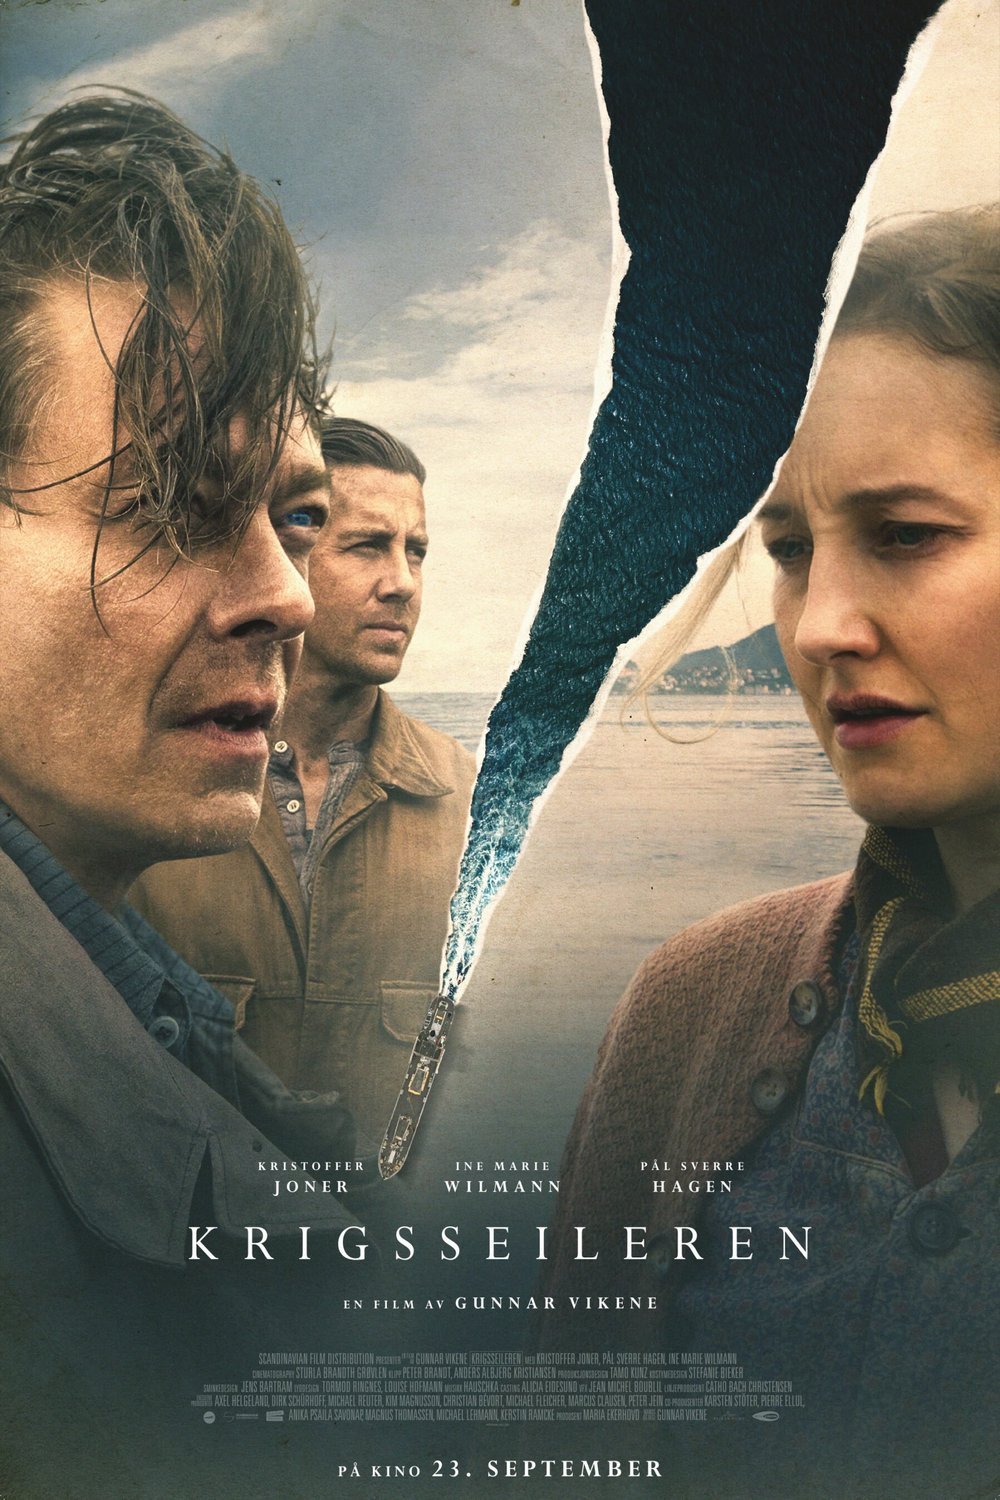 L'affiche originale du film Krigsseileren en norvégien